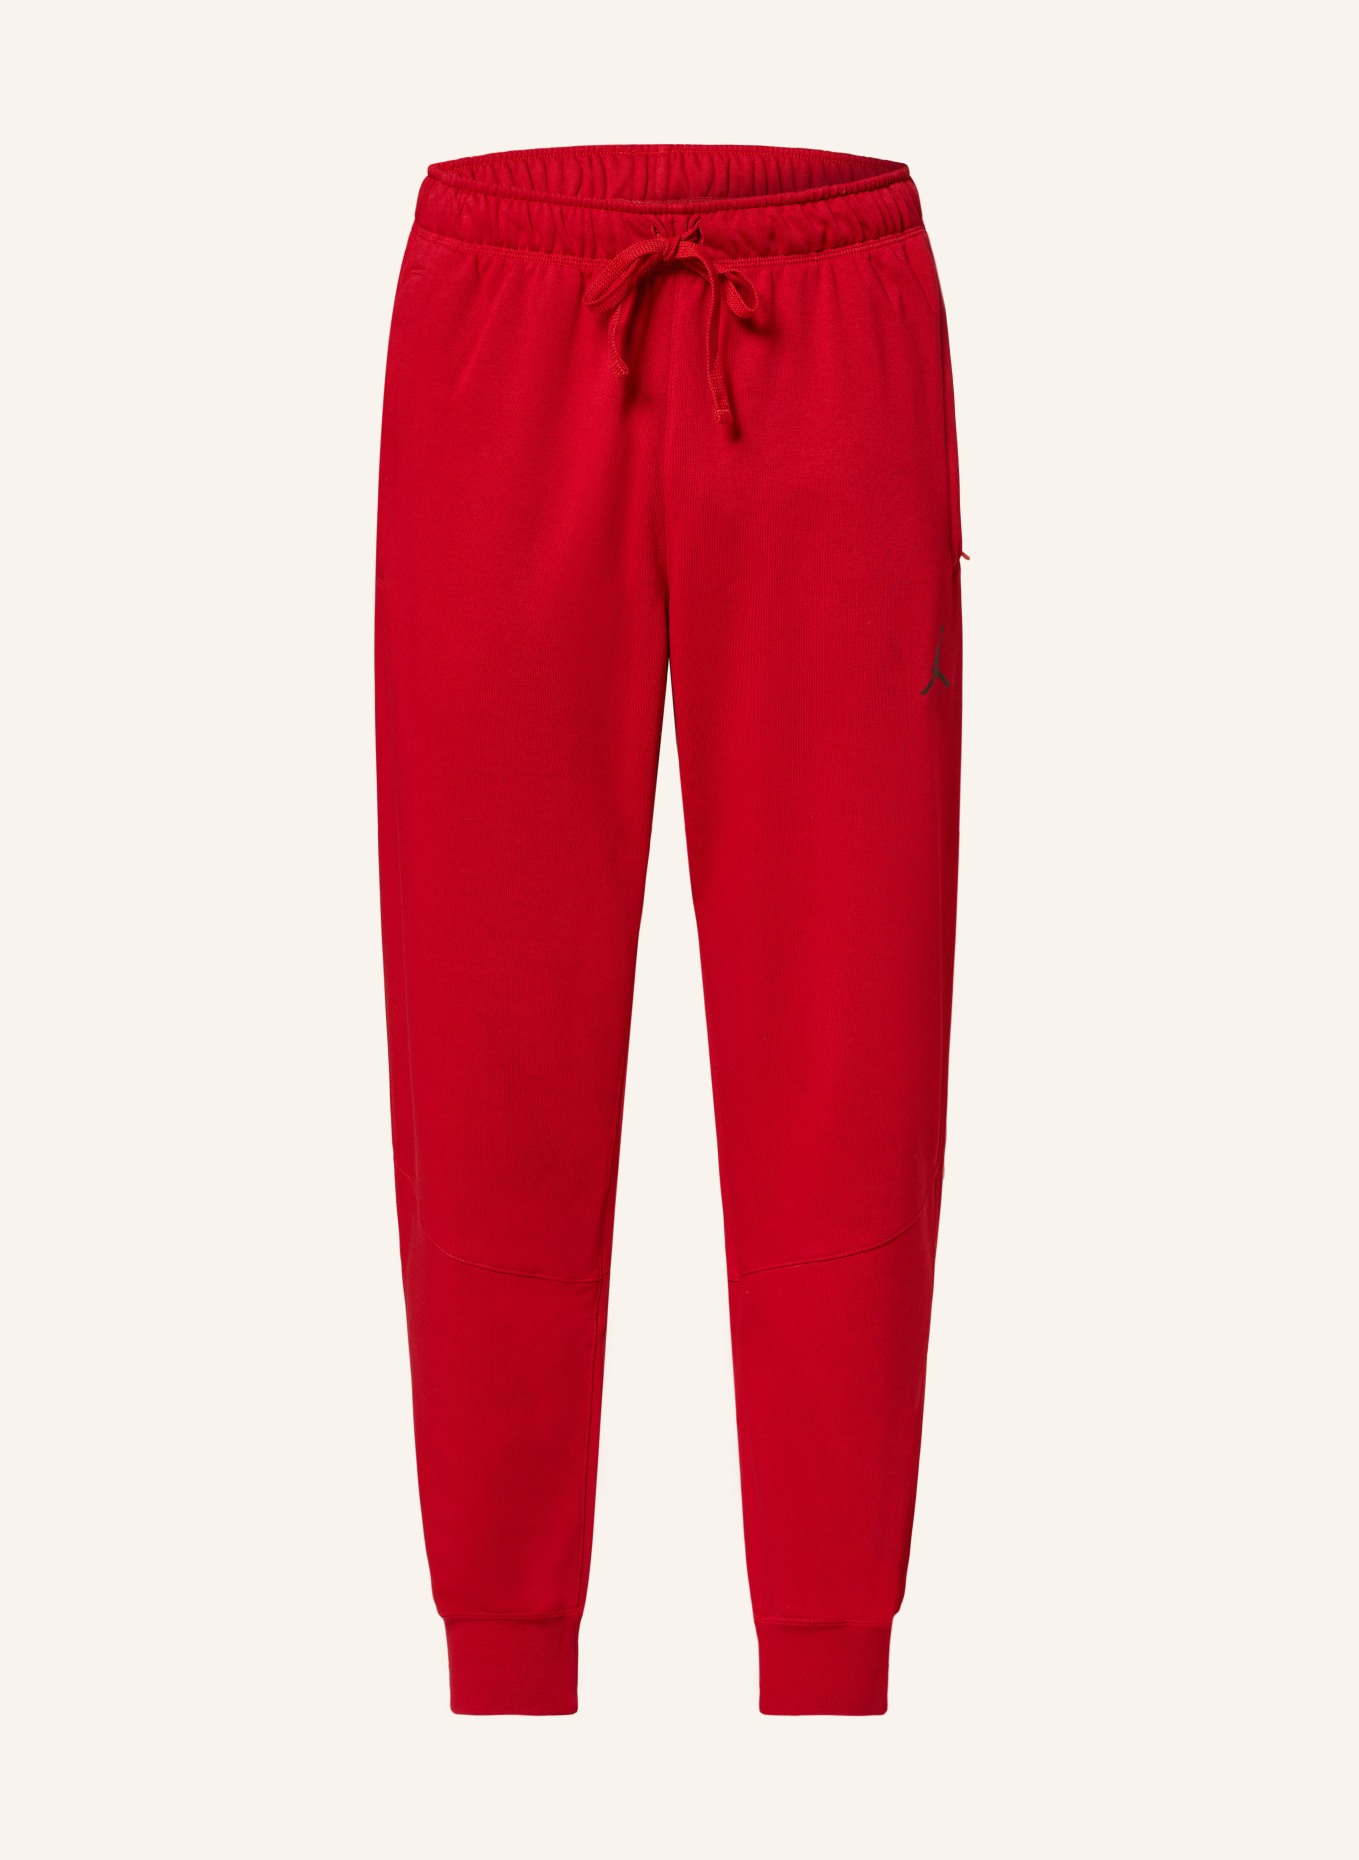 JORDAN Sweatpants DRI-FIT, Color: RED (Image 1)